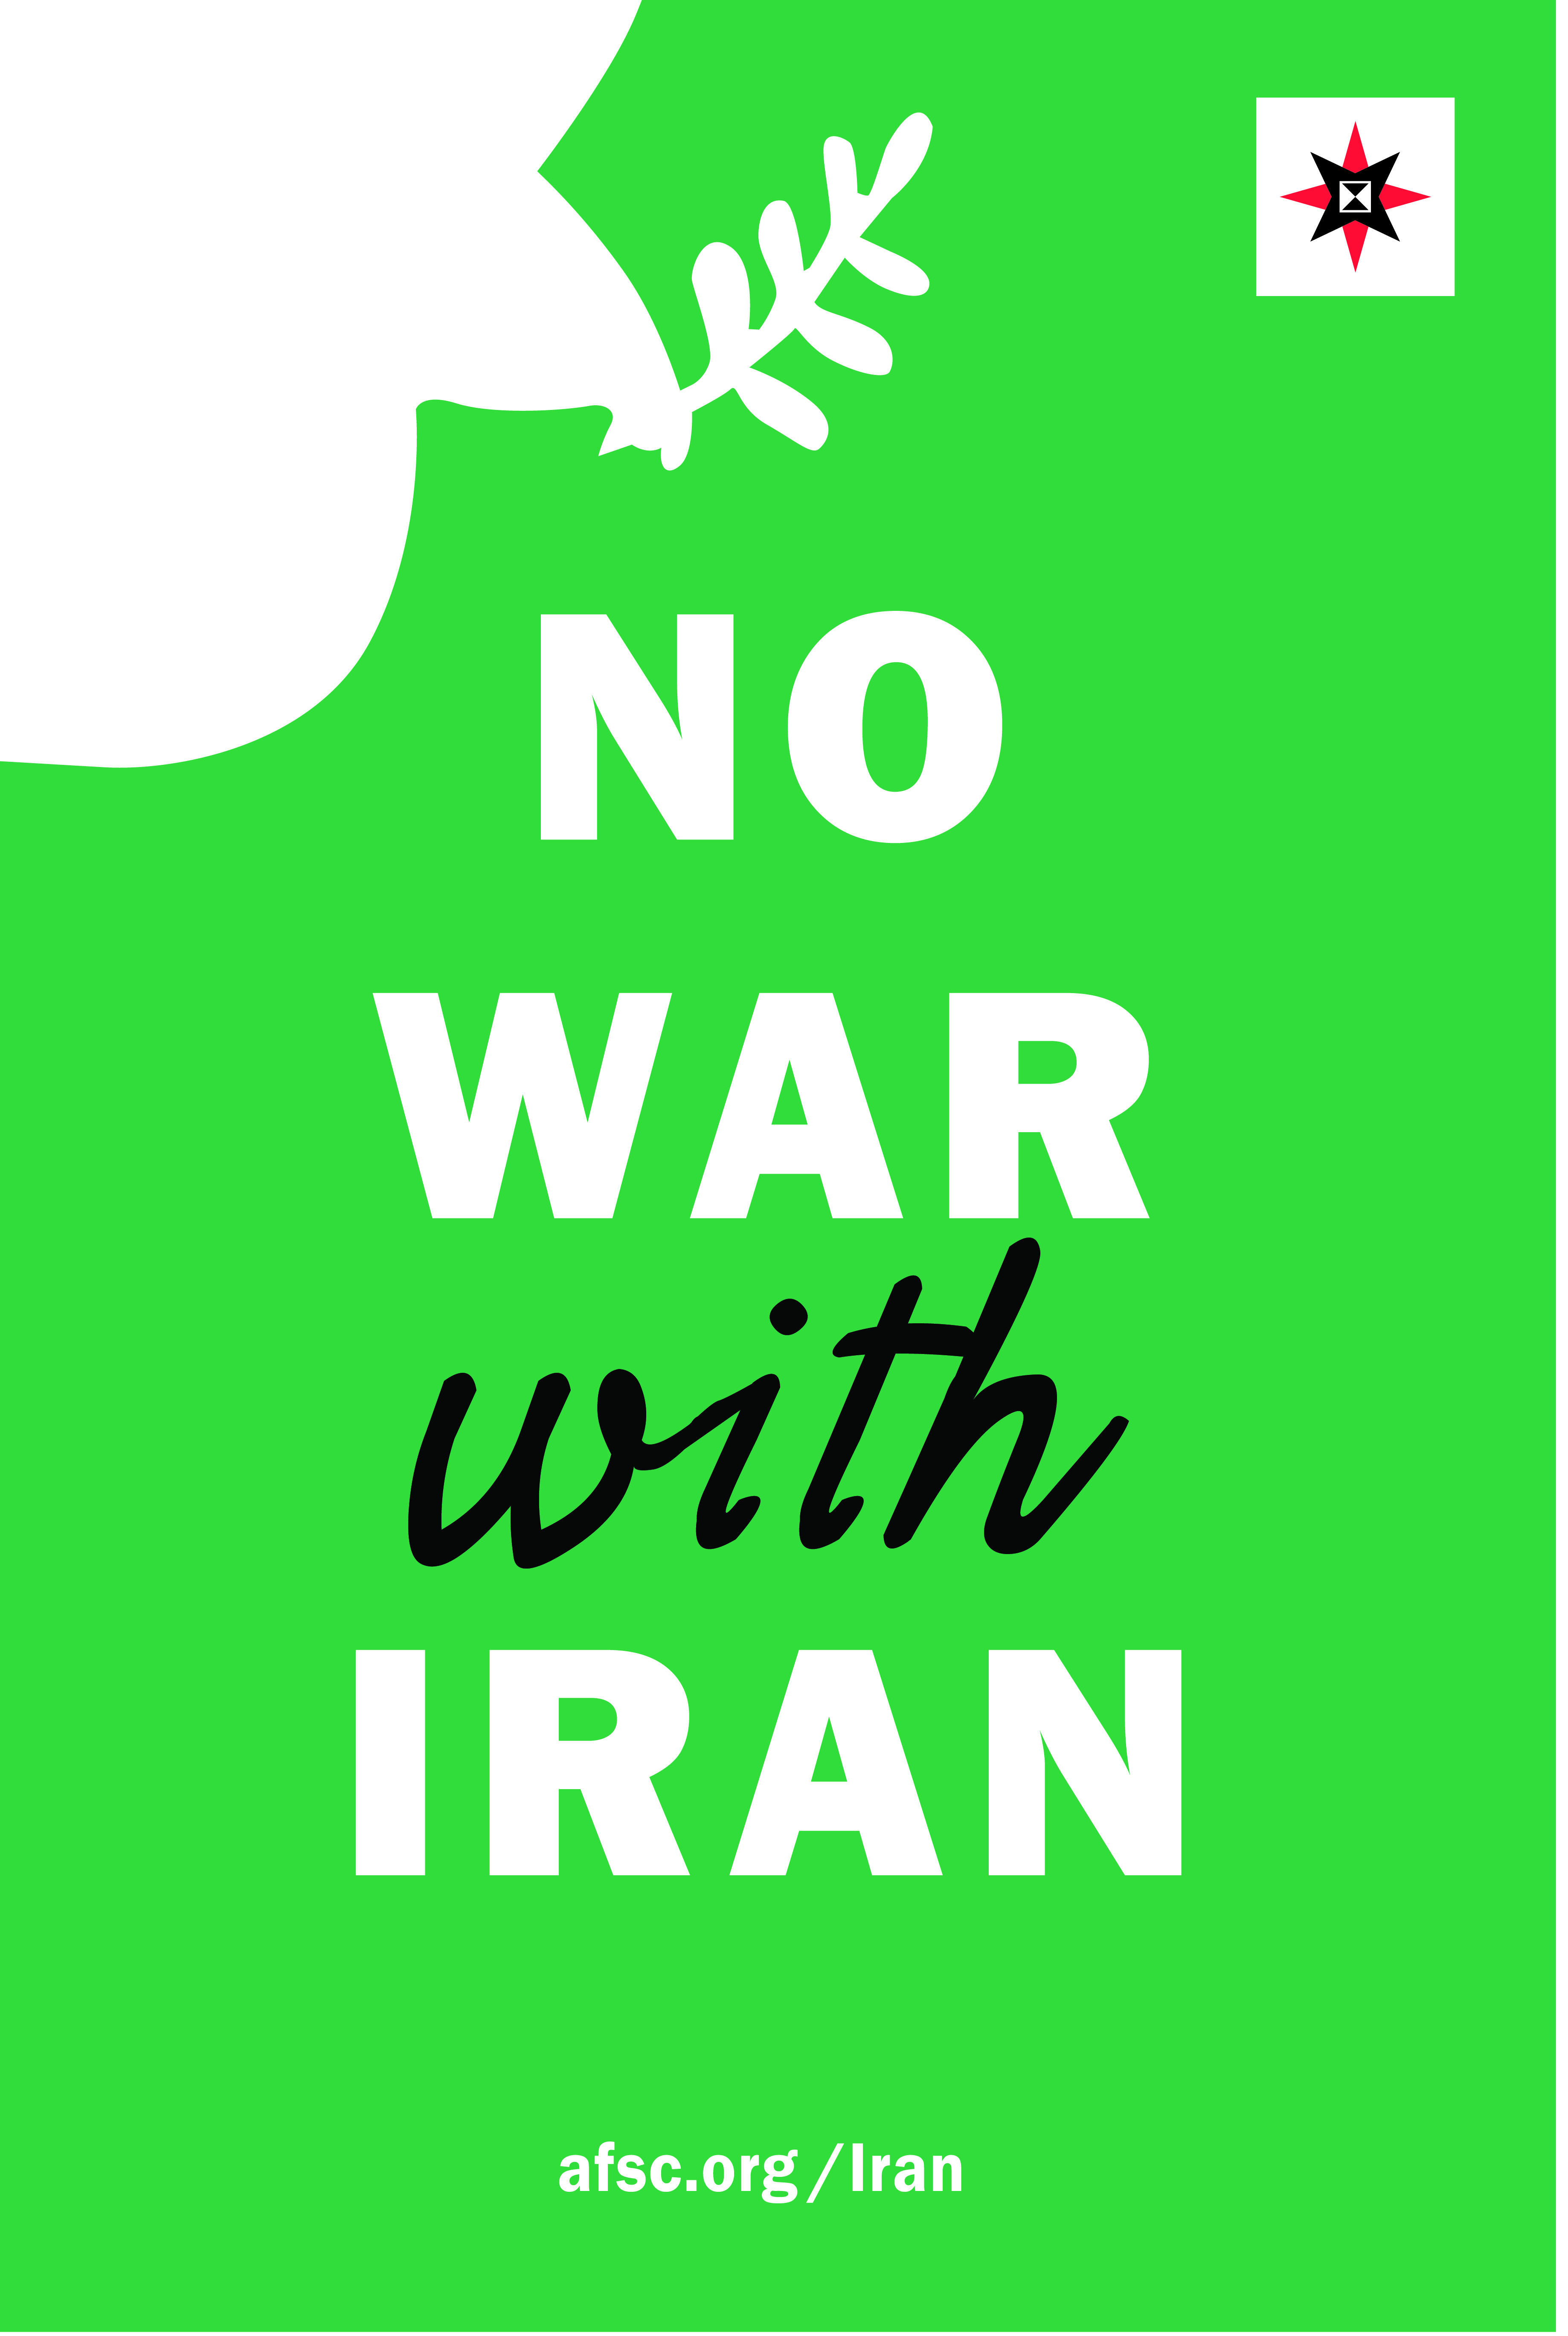 No war with Iran poster (green)